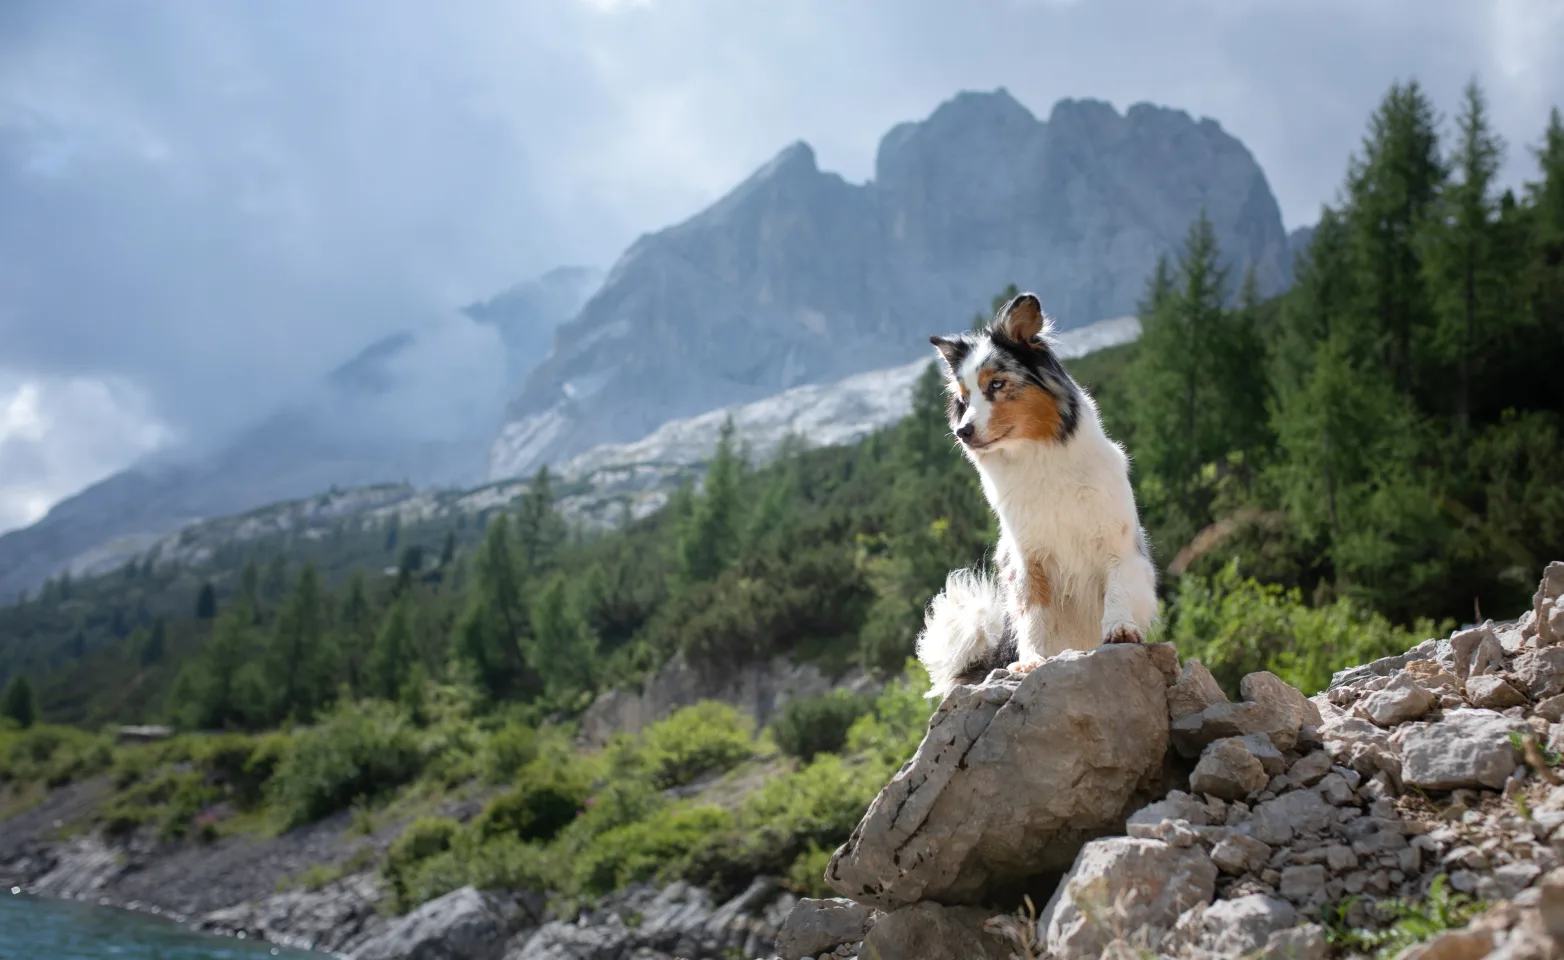  Dog on mountain 